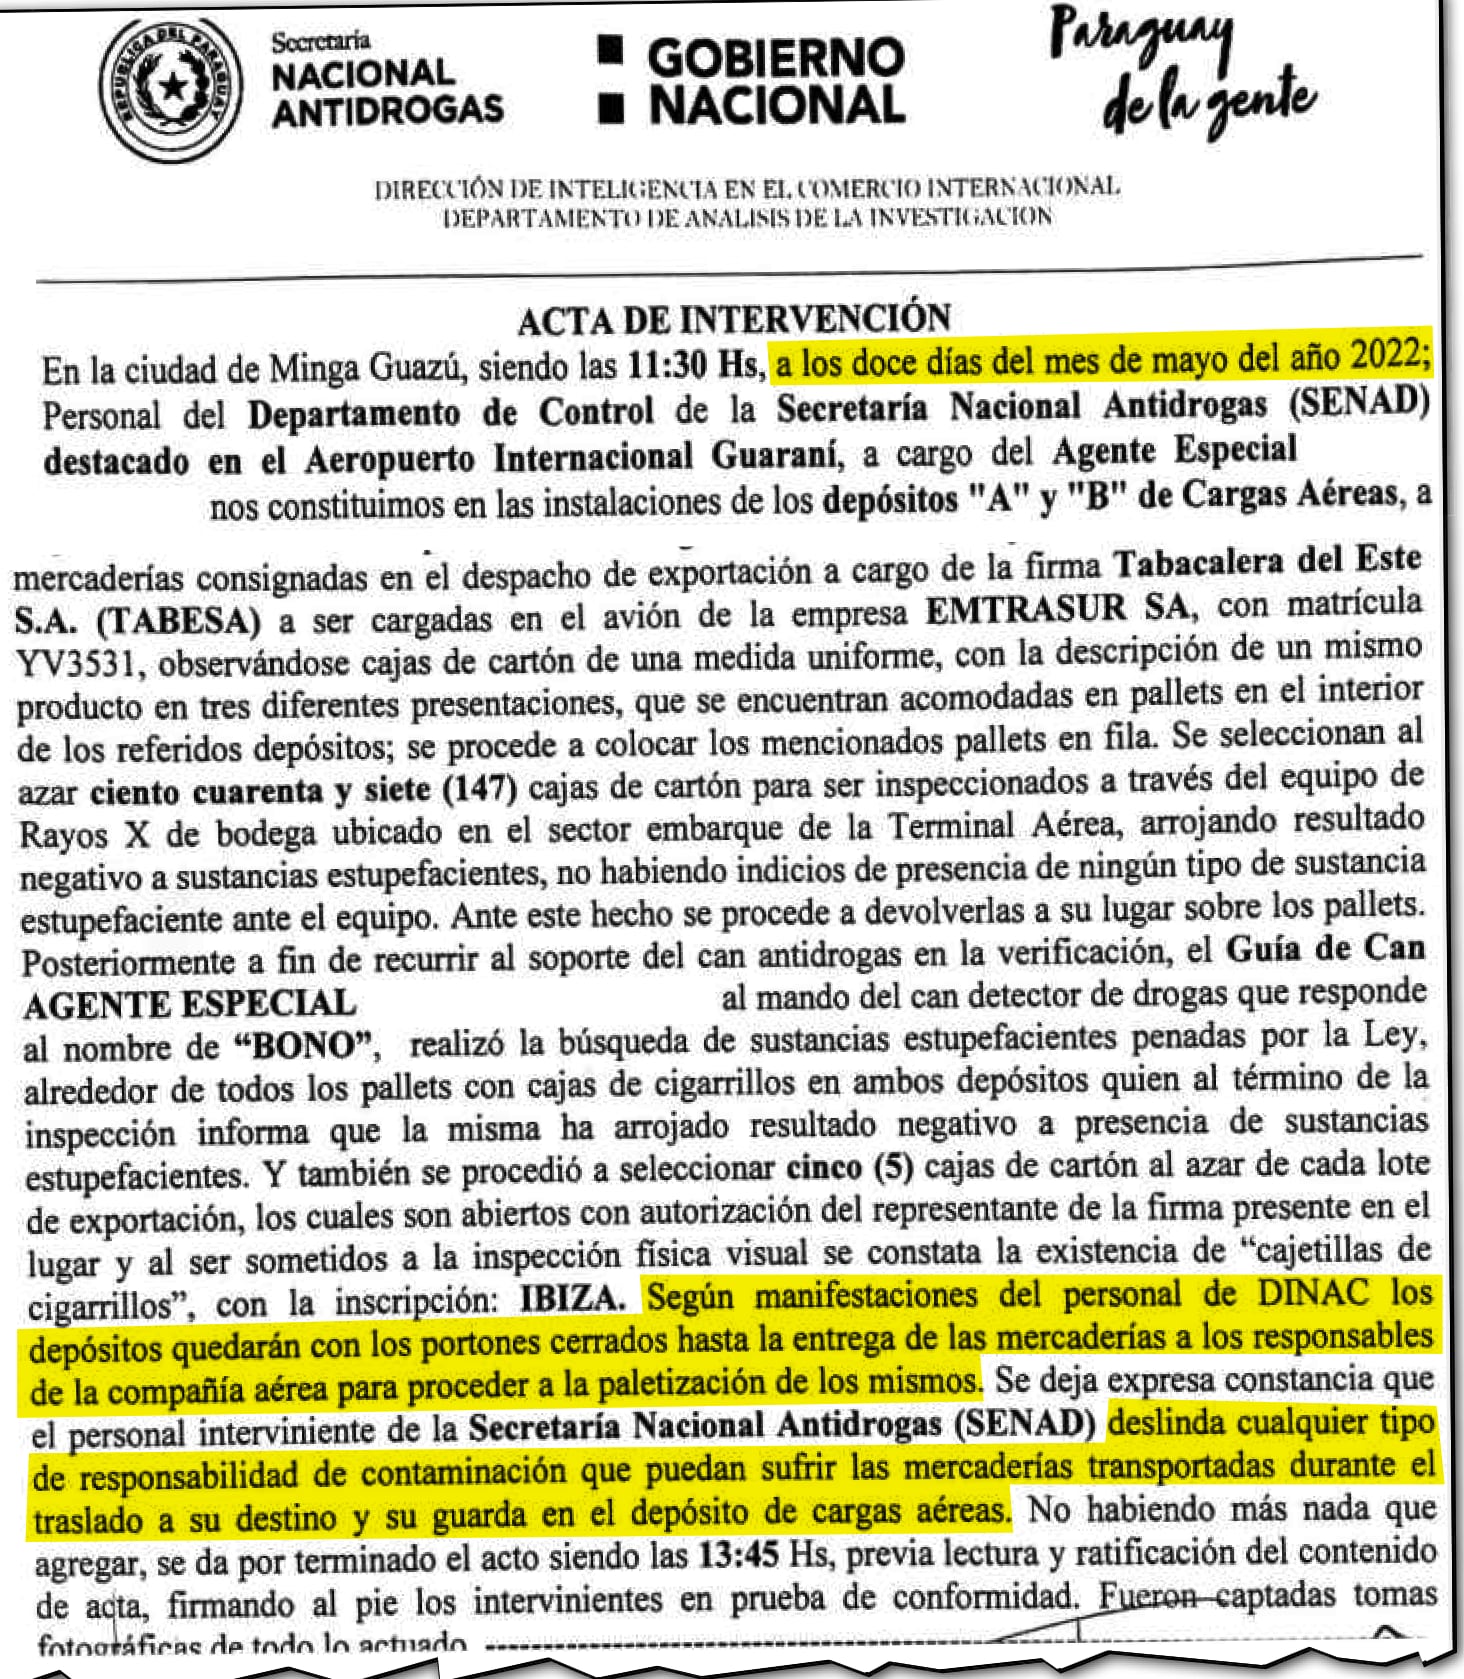 De acuerdo al acta, el control aleatorio de la carga de cigarrillos se realizó el 12 de mayo pasado, un día antes de que el avión iraní llegara al aeropuerto Guaraní de Minga Guazú.